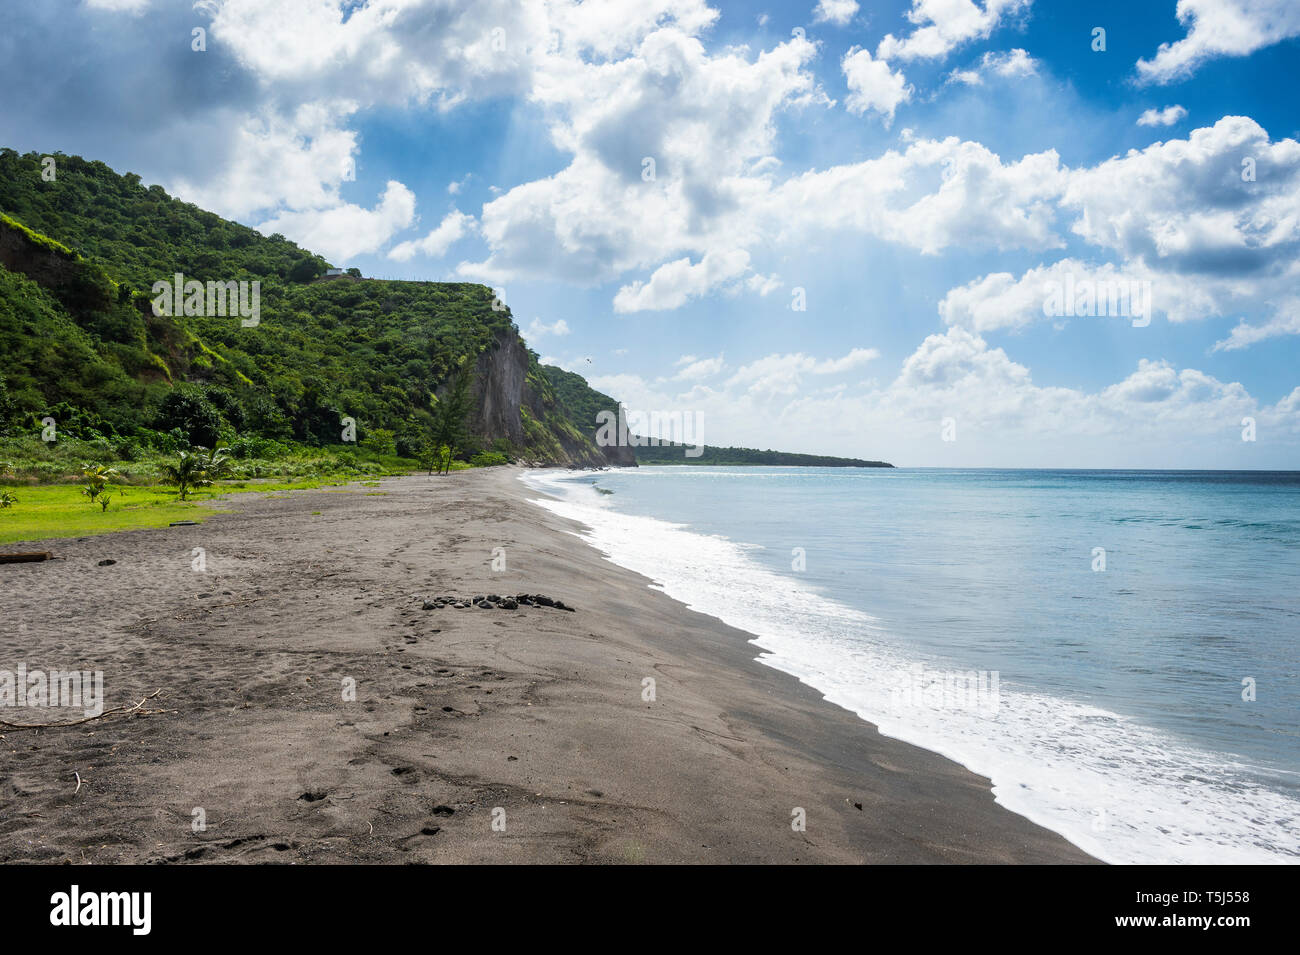 British Overseas Territory, Montserrat, Volcanic sand beach Stock Photo